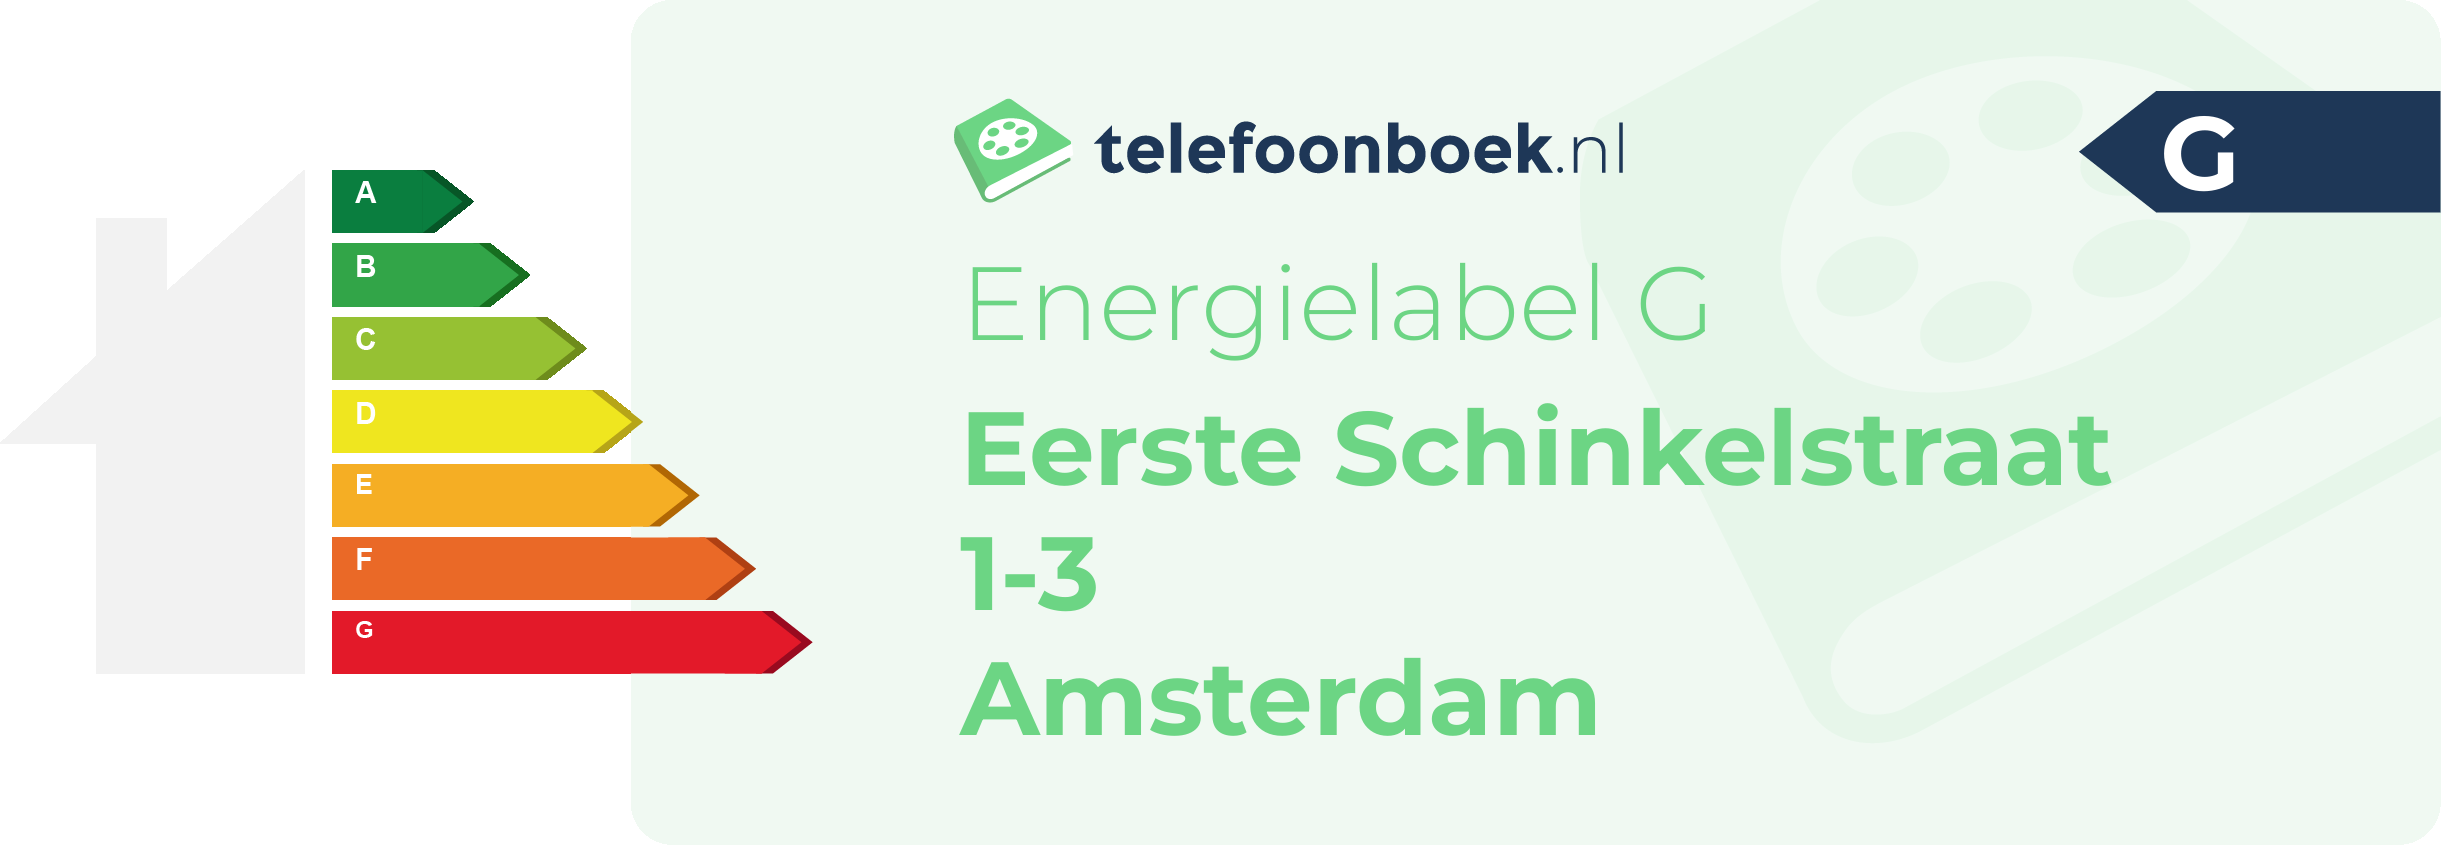 Energielabel Eerste Schinkelstraat 1-3 Amsterdam